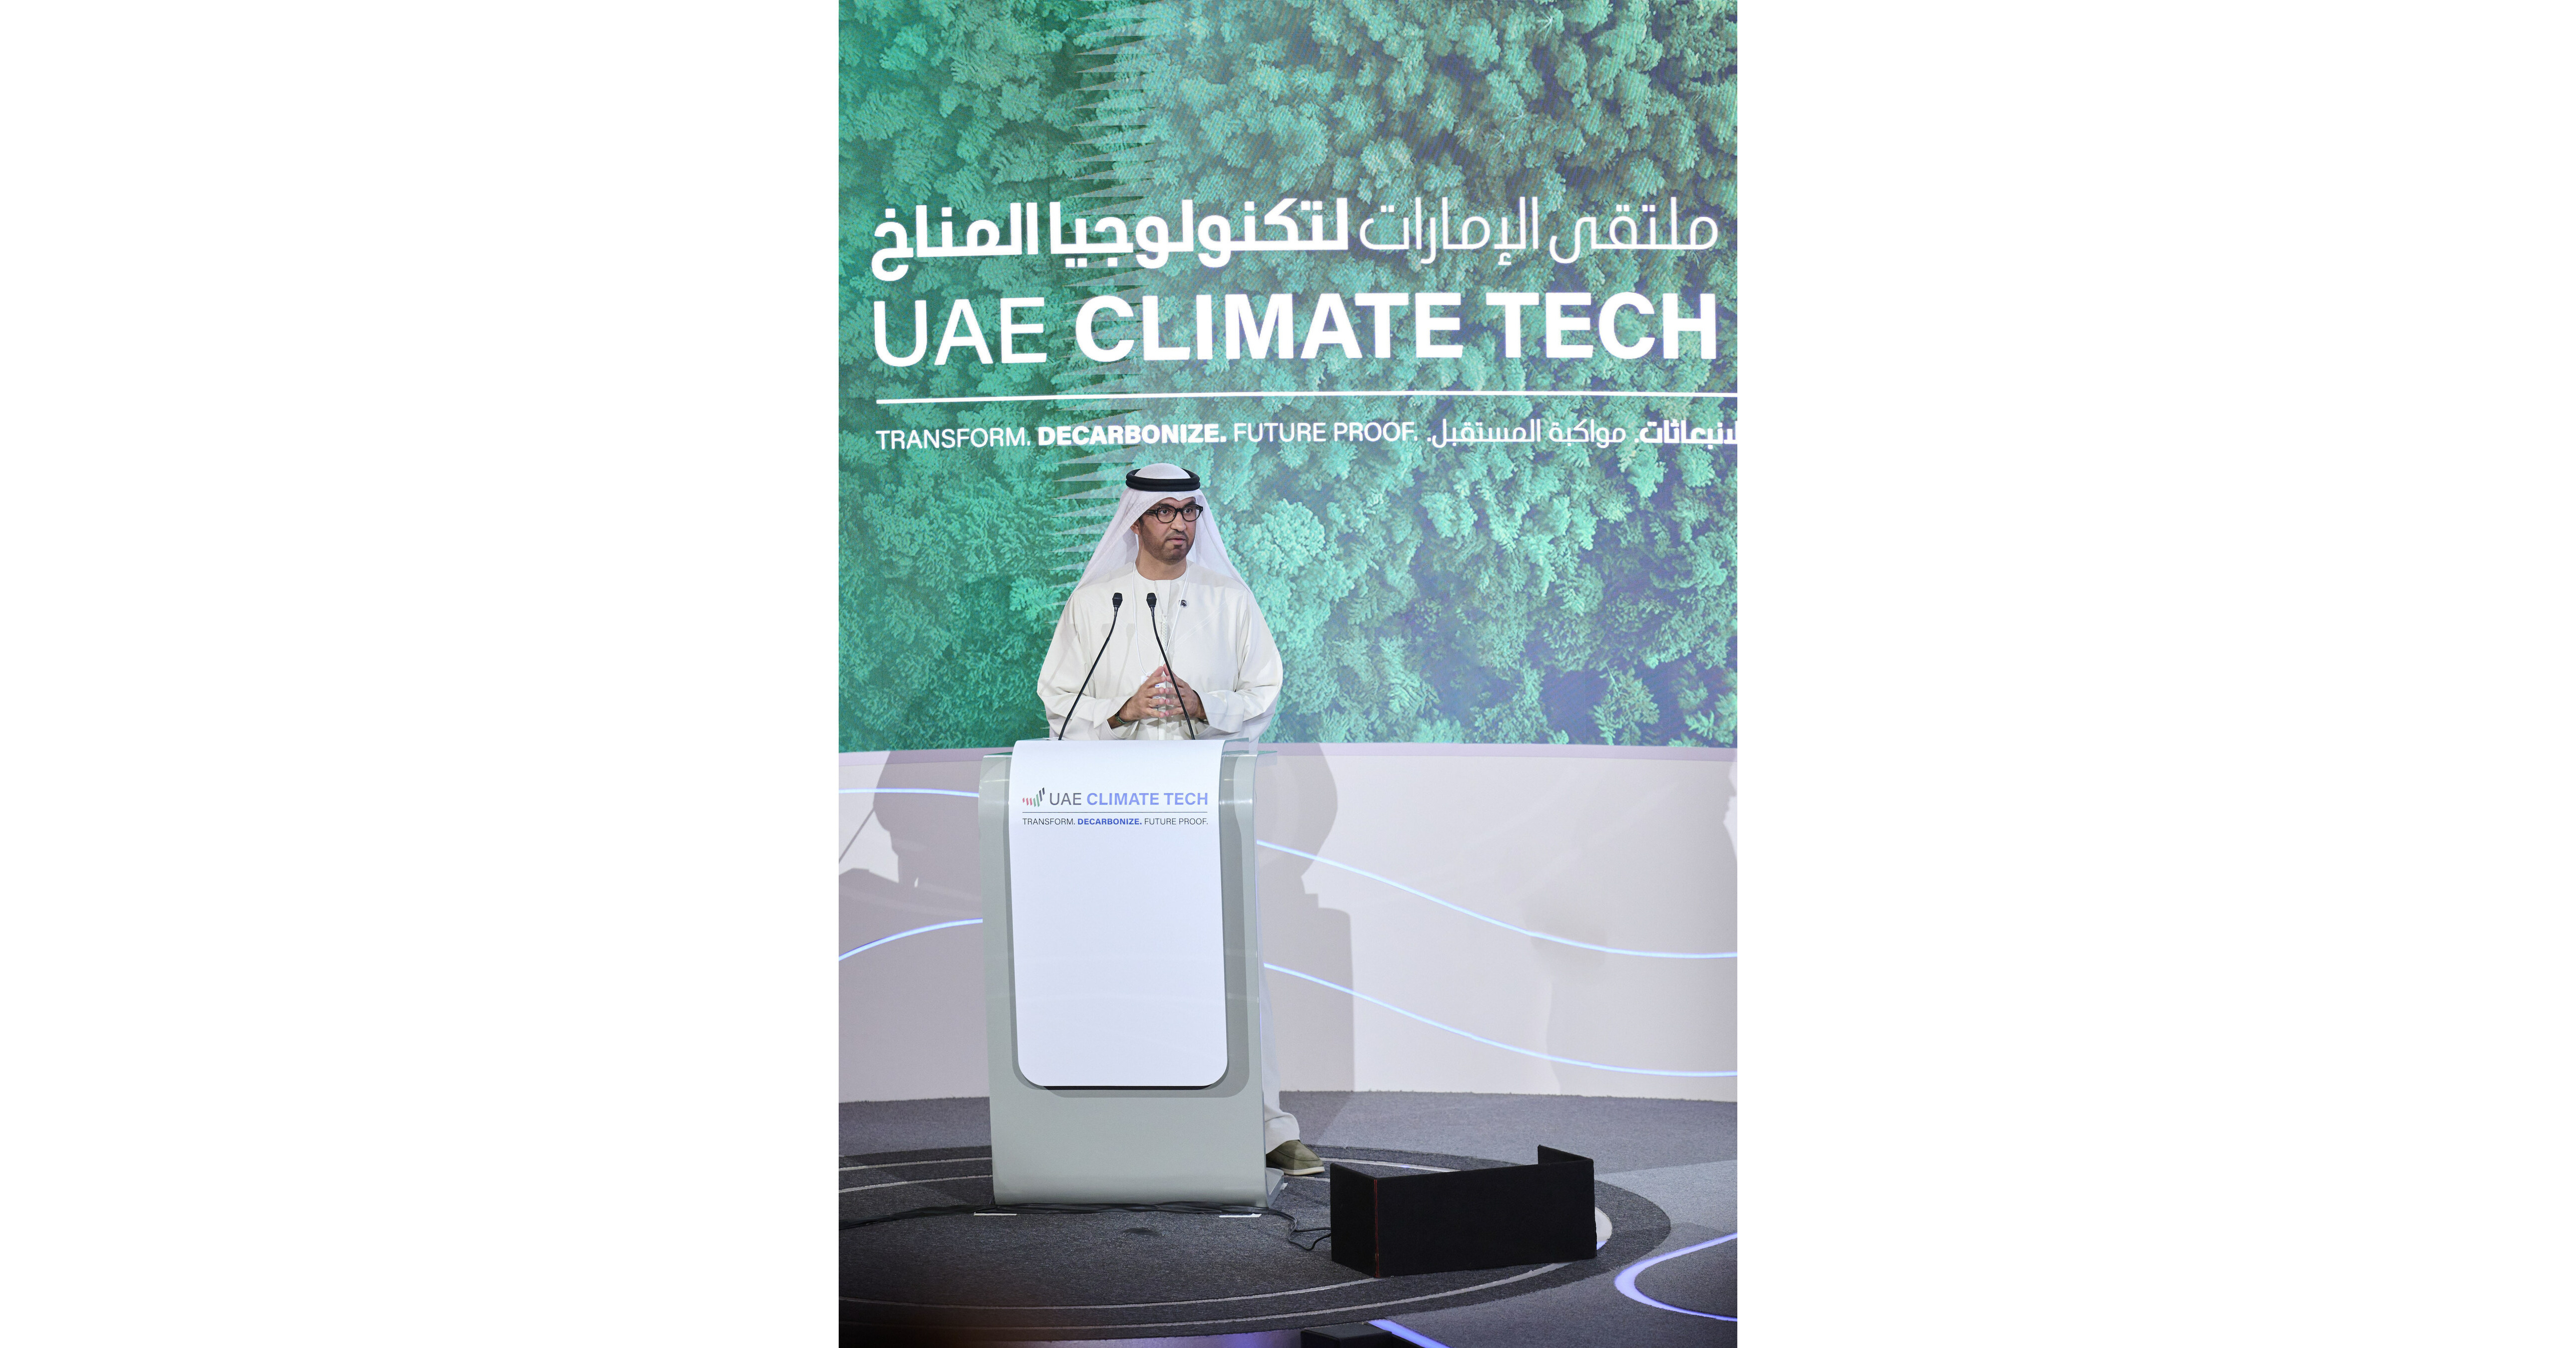 Lors de la conférence UAE Climate Tech, le Président désigné de la COP28  lance un appel à l'action pour transformer, décarboniser et pérenniser les  économies